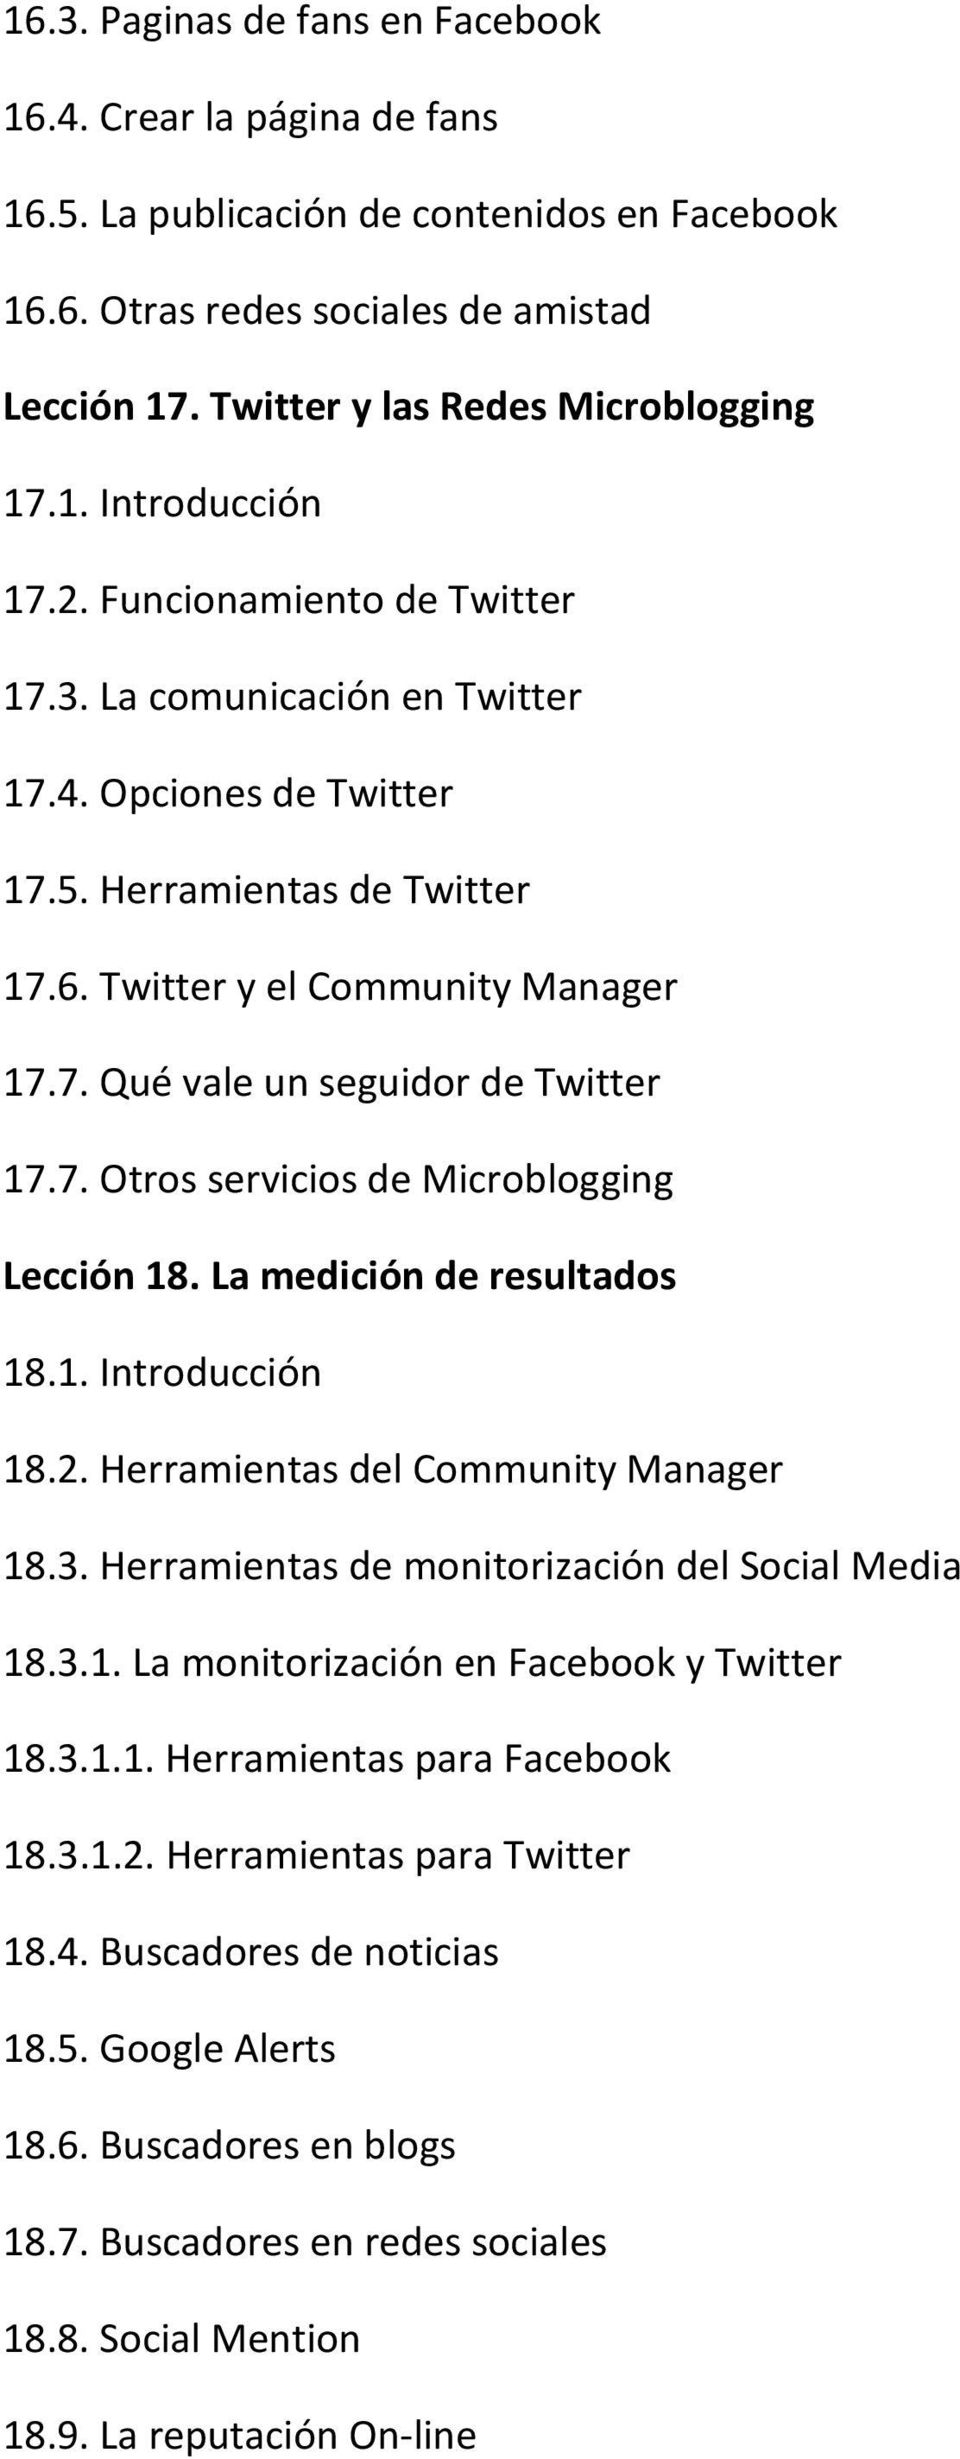 La medición de resultados 18.1. Introducción 18.2. Herramientas del Community Manager 18.3. Herramientas de monitorización del Social Media 18.3.1. La monitorización en Facebook y Twitter 18.3.1.1. Herramientas para Facebook 18.